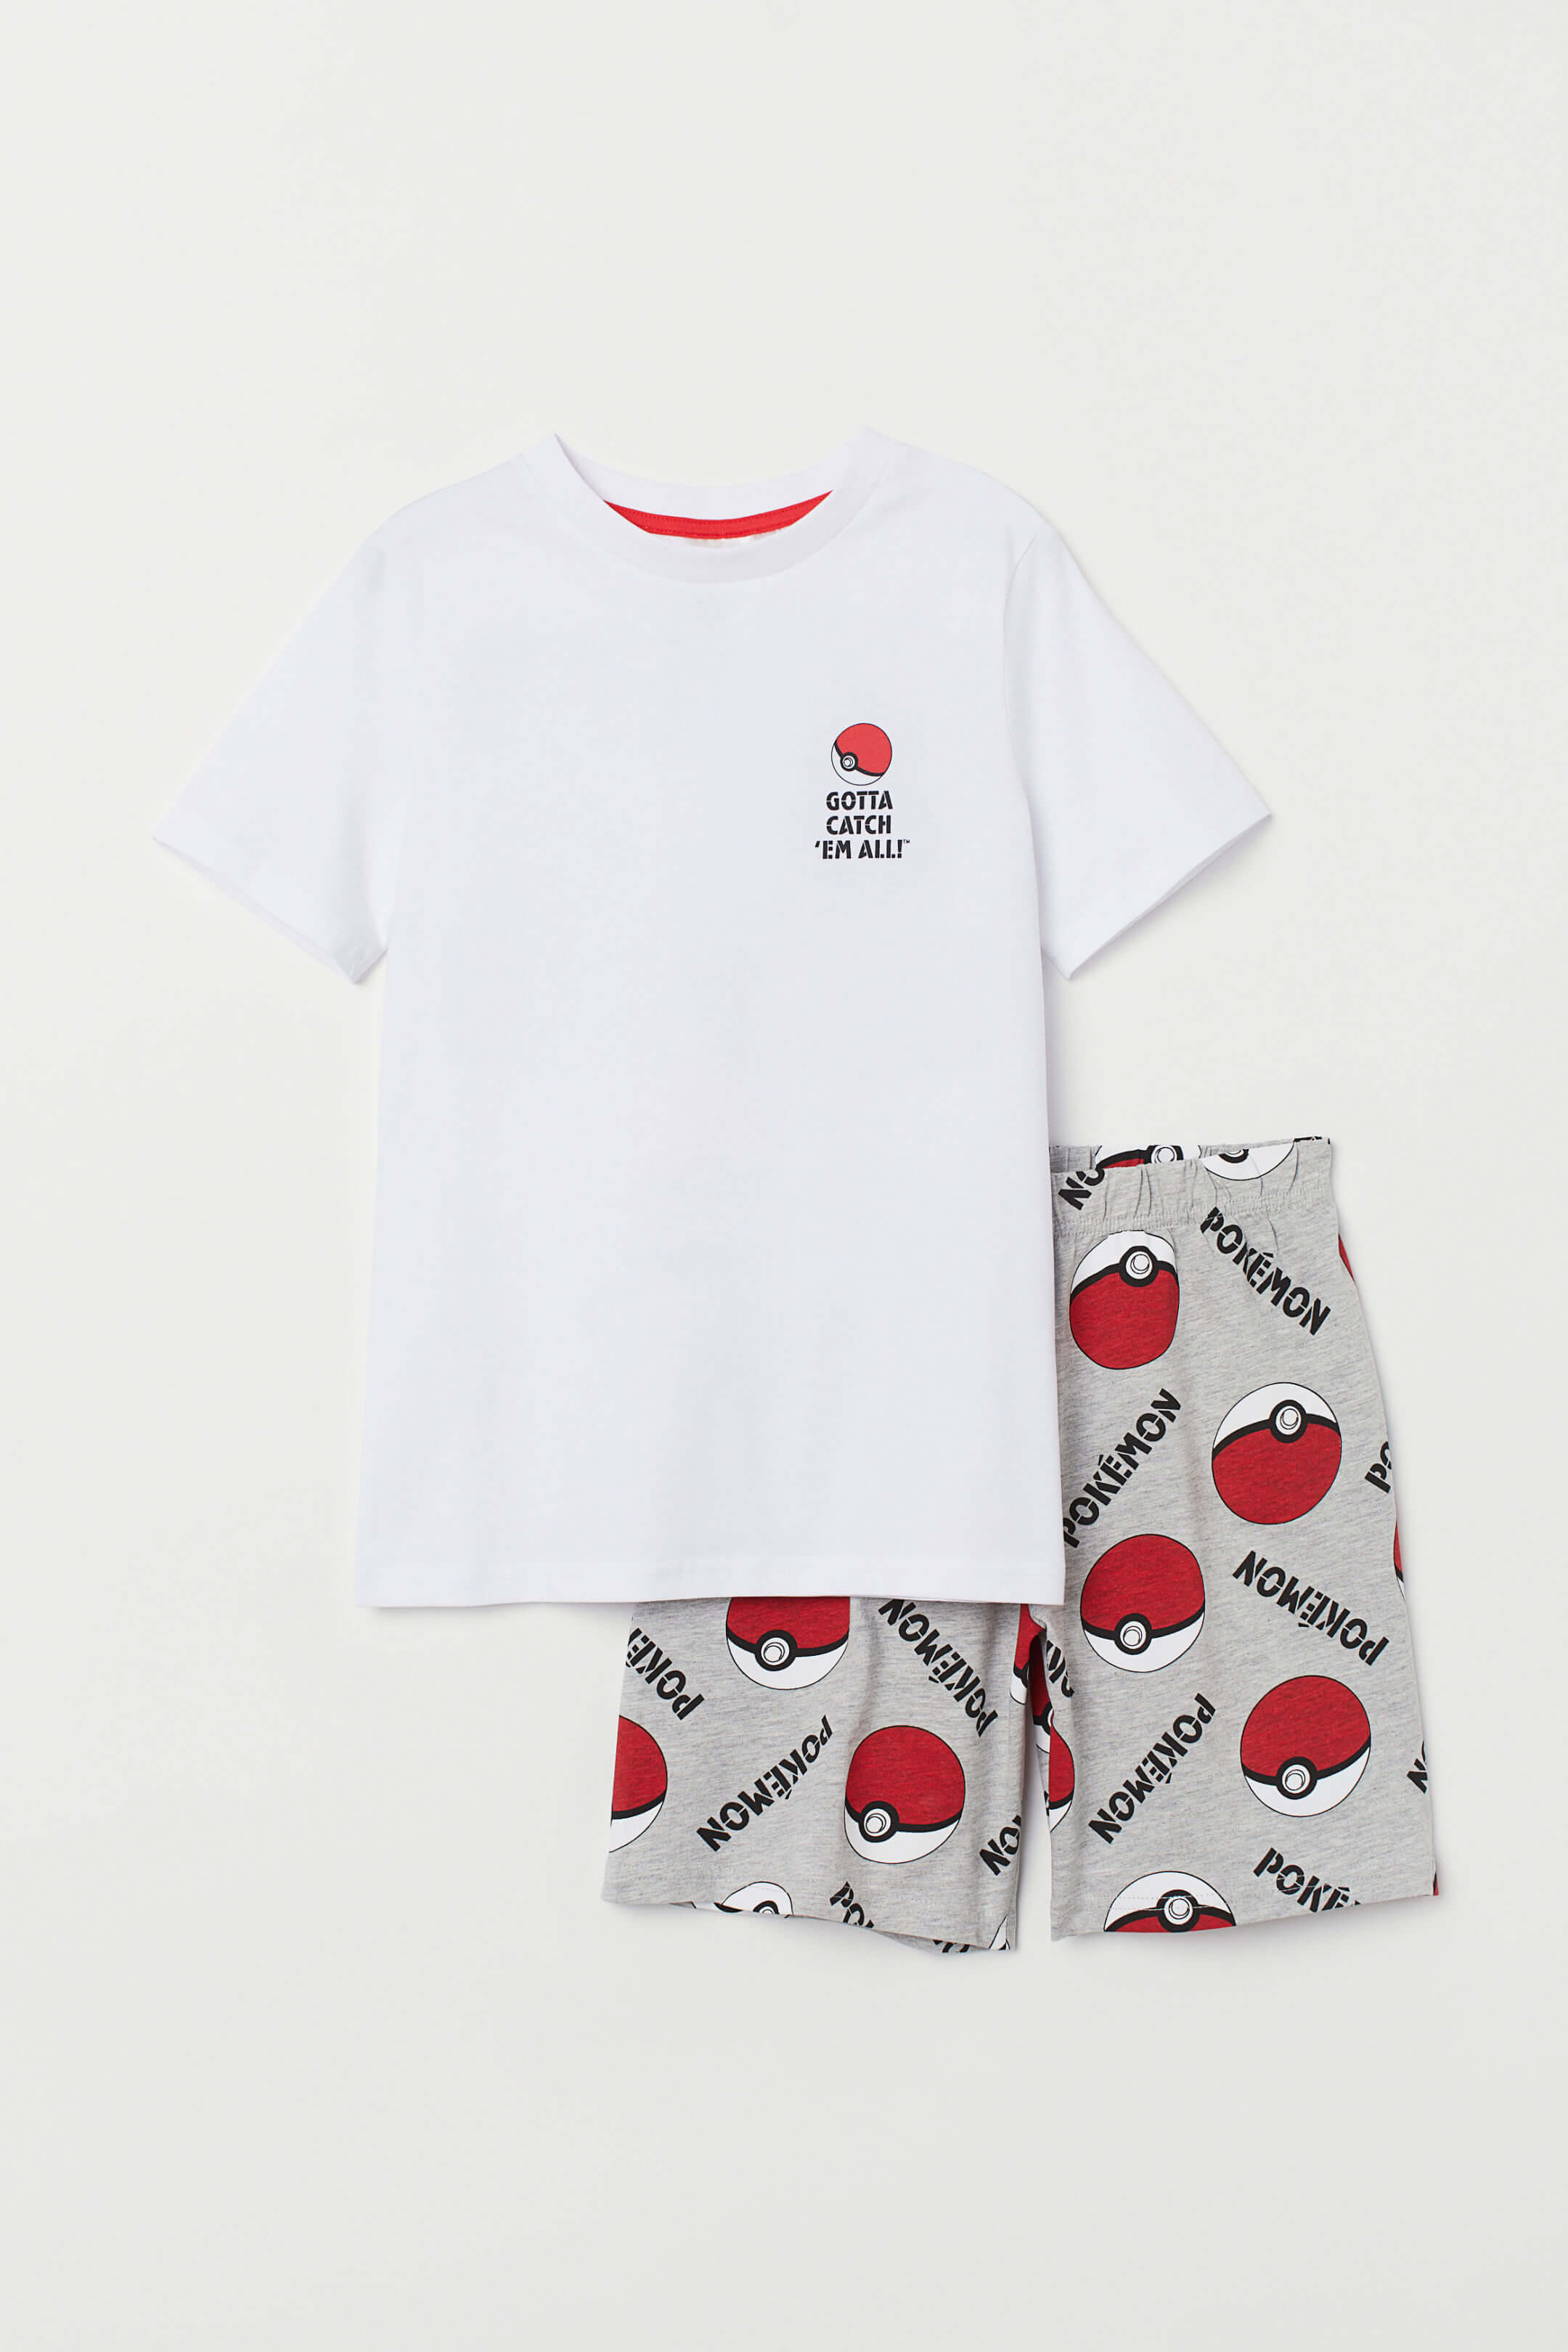 Tシャツ＆パンツセット：1,799円sub1　T shirt and pants H&M pkemon collection ポケモンコレクション0